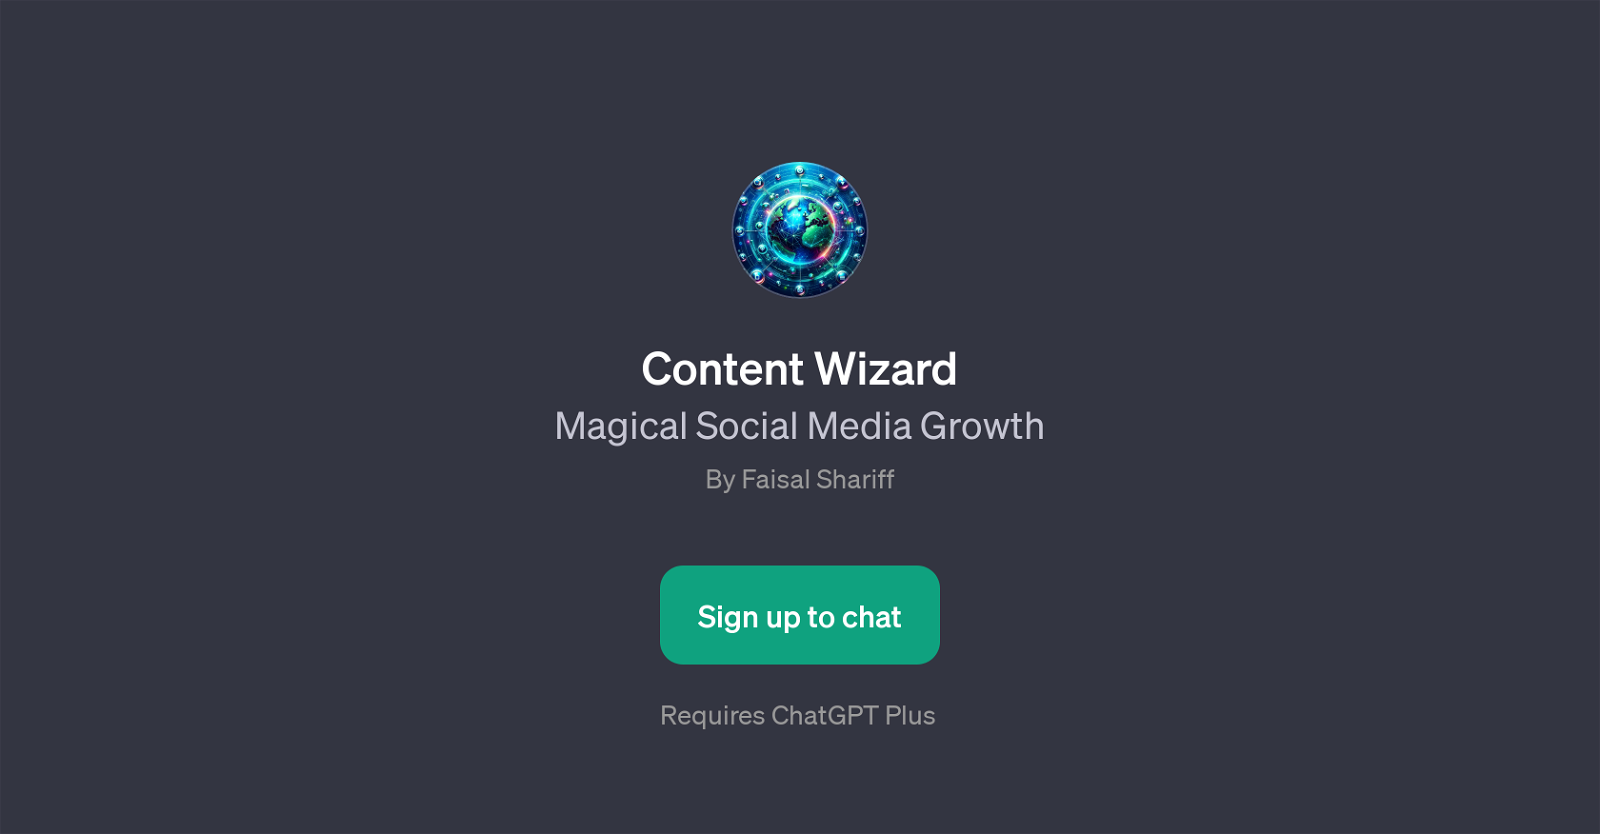 Content Wizard website